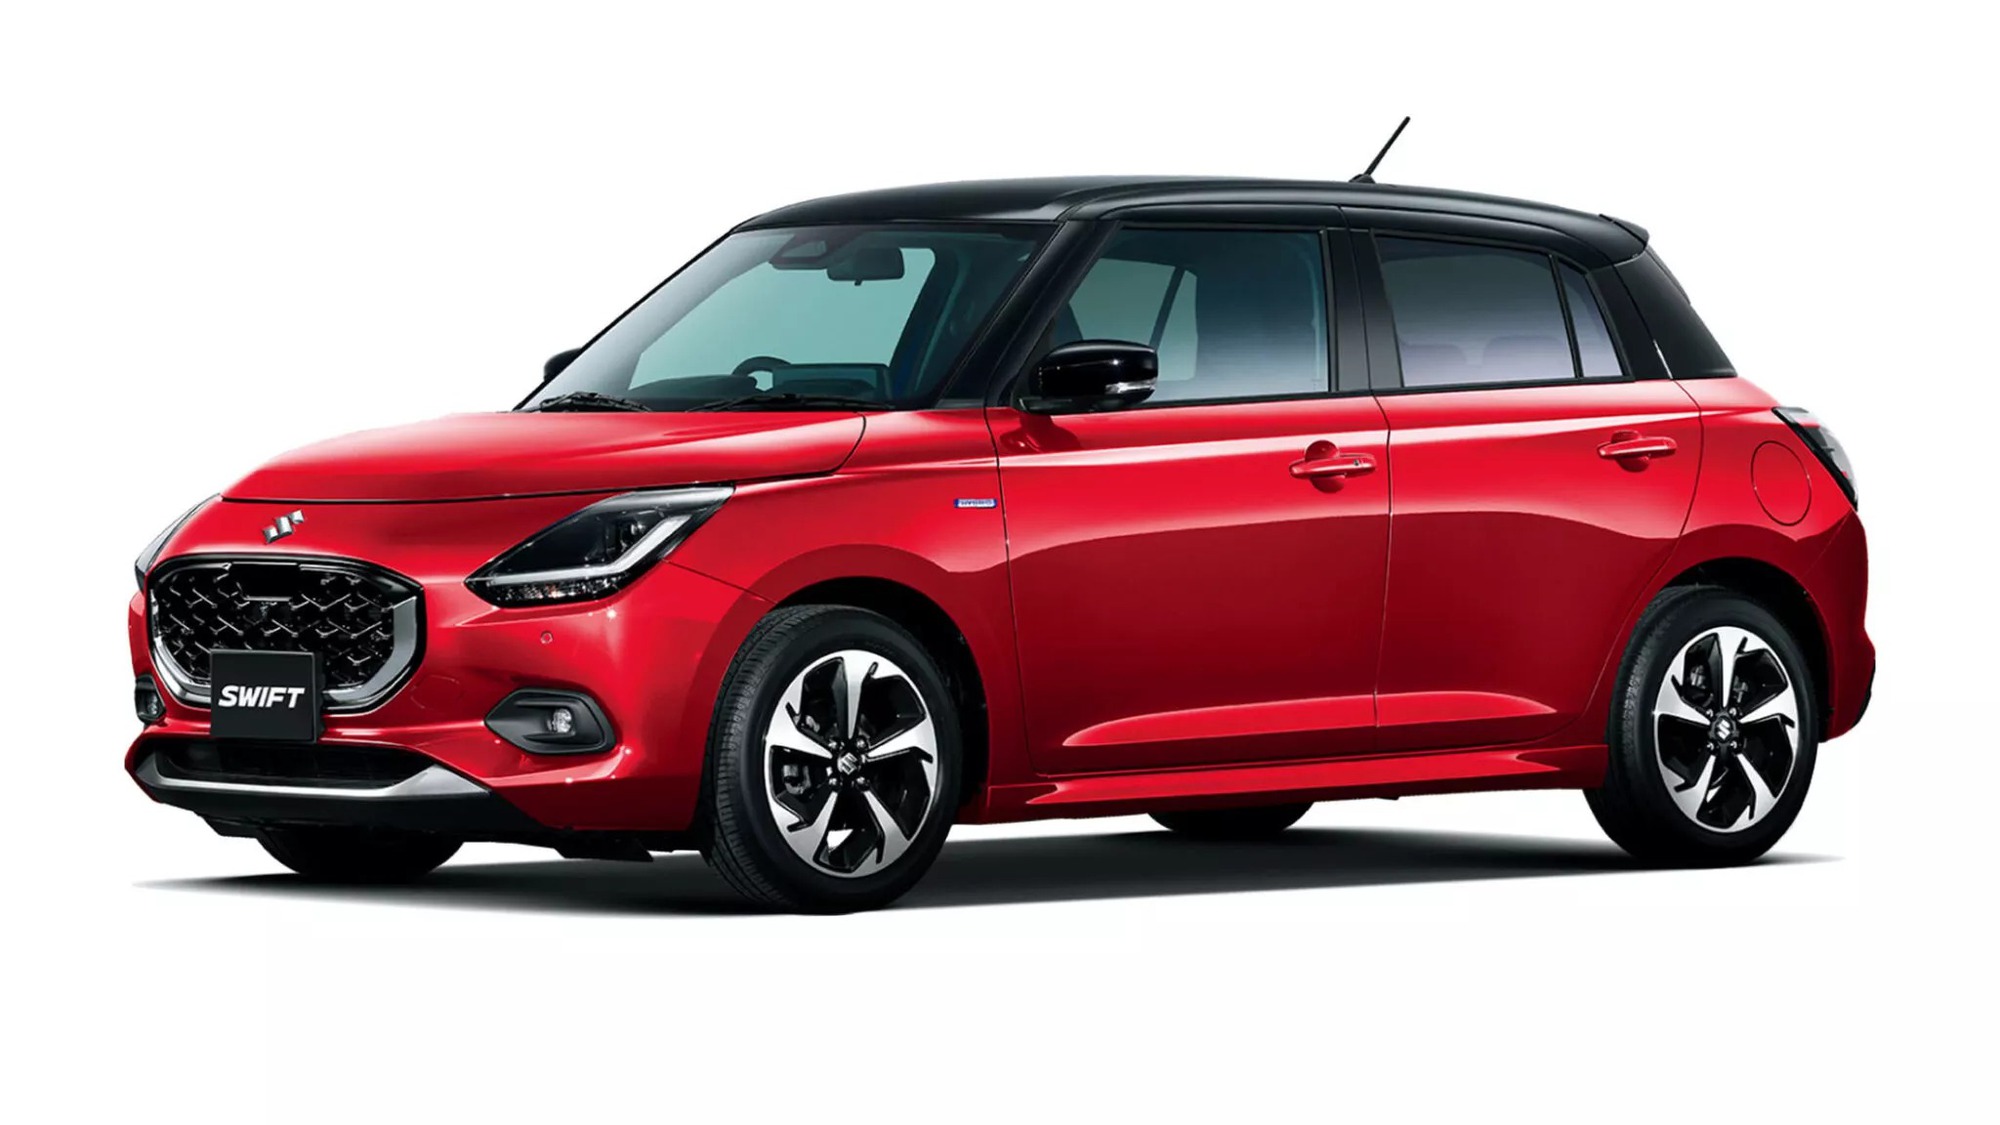 Suzuki Swift thế hệ mới trông sẽ nhỏ hơn bản cũ, đi 100km chỉ 'ăn' hơn 4 lít xăng - Ảnh 1.